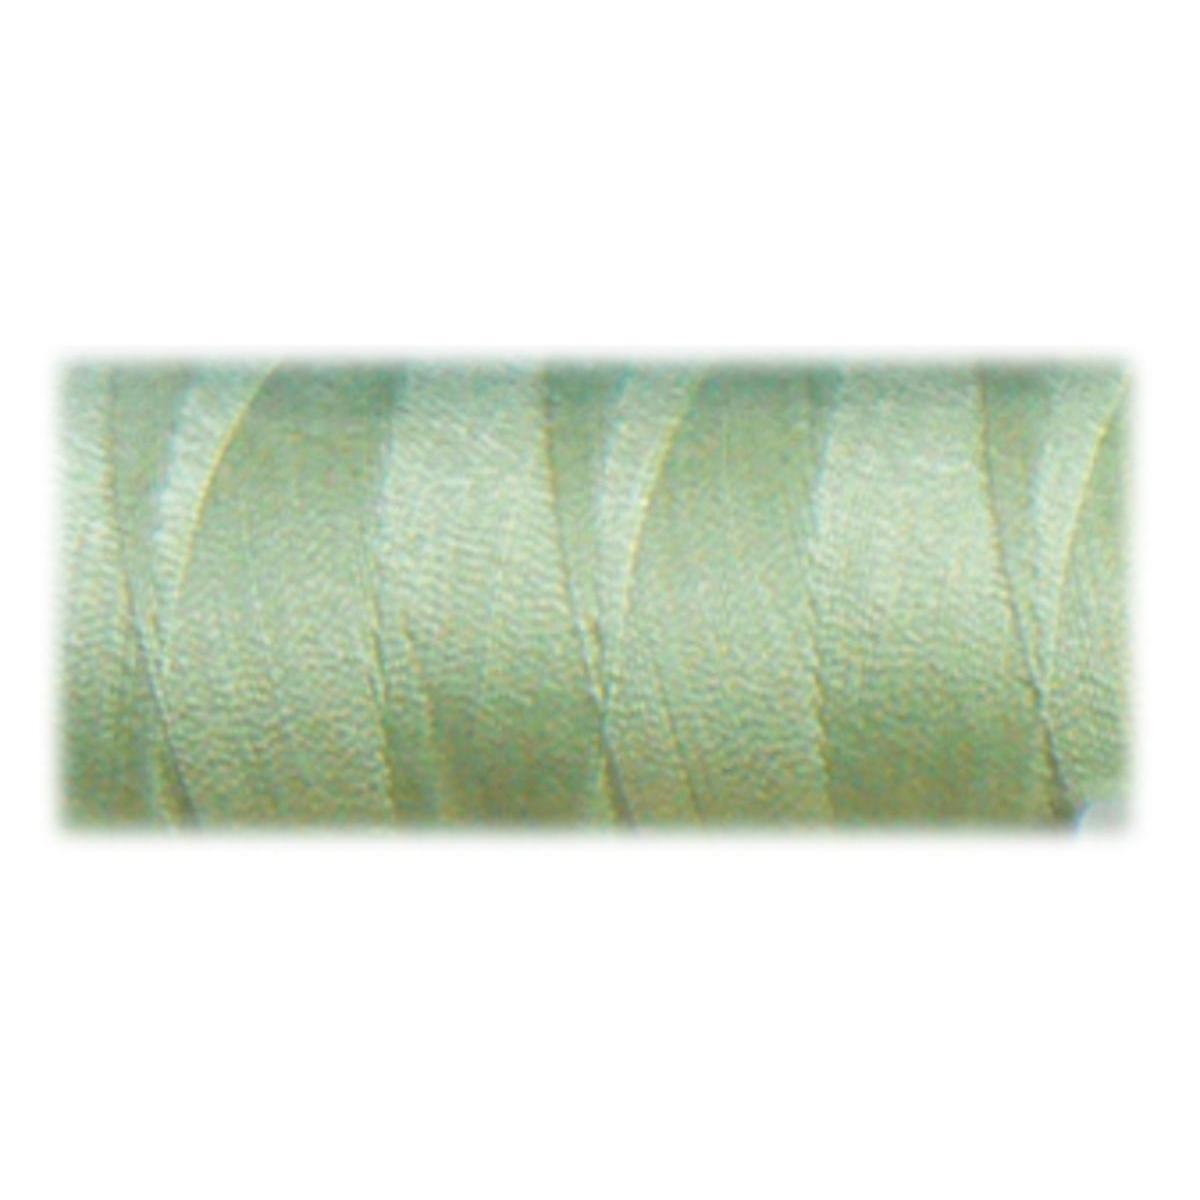 Bobine de fil - 100% polyester - 500 m - Vert pâle